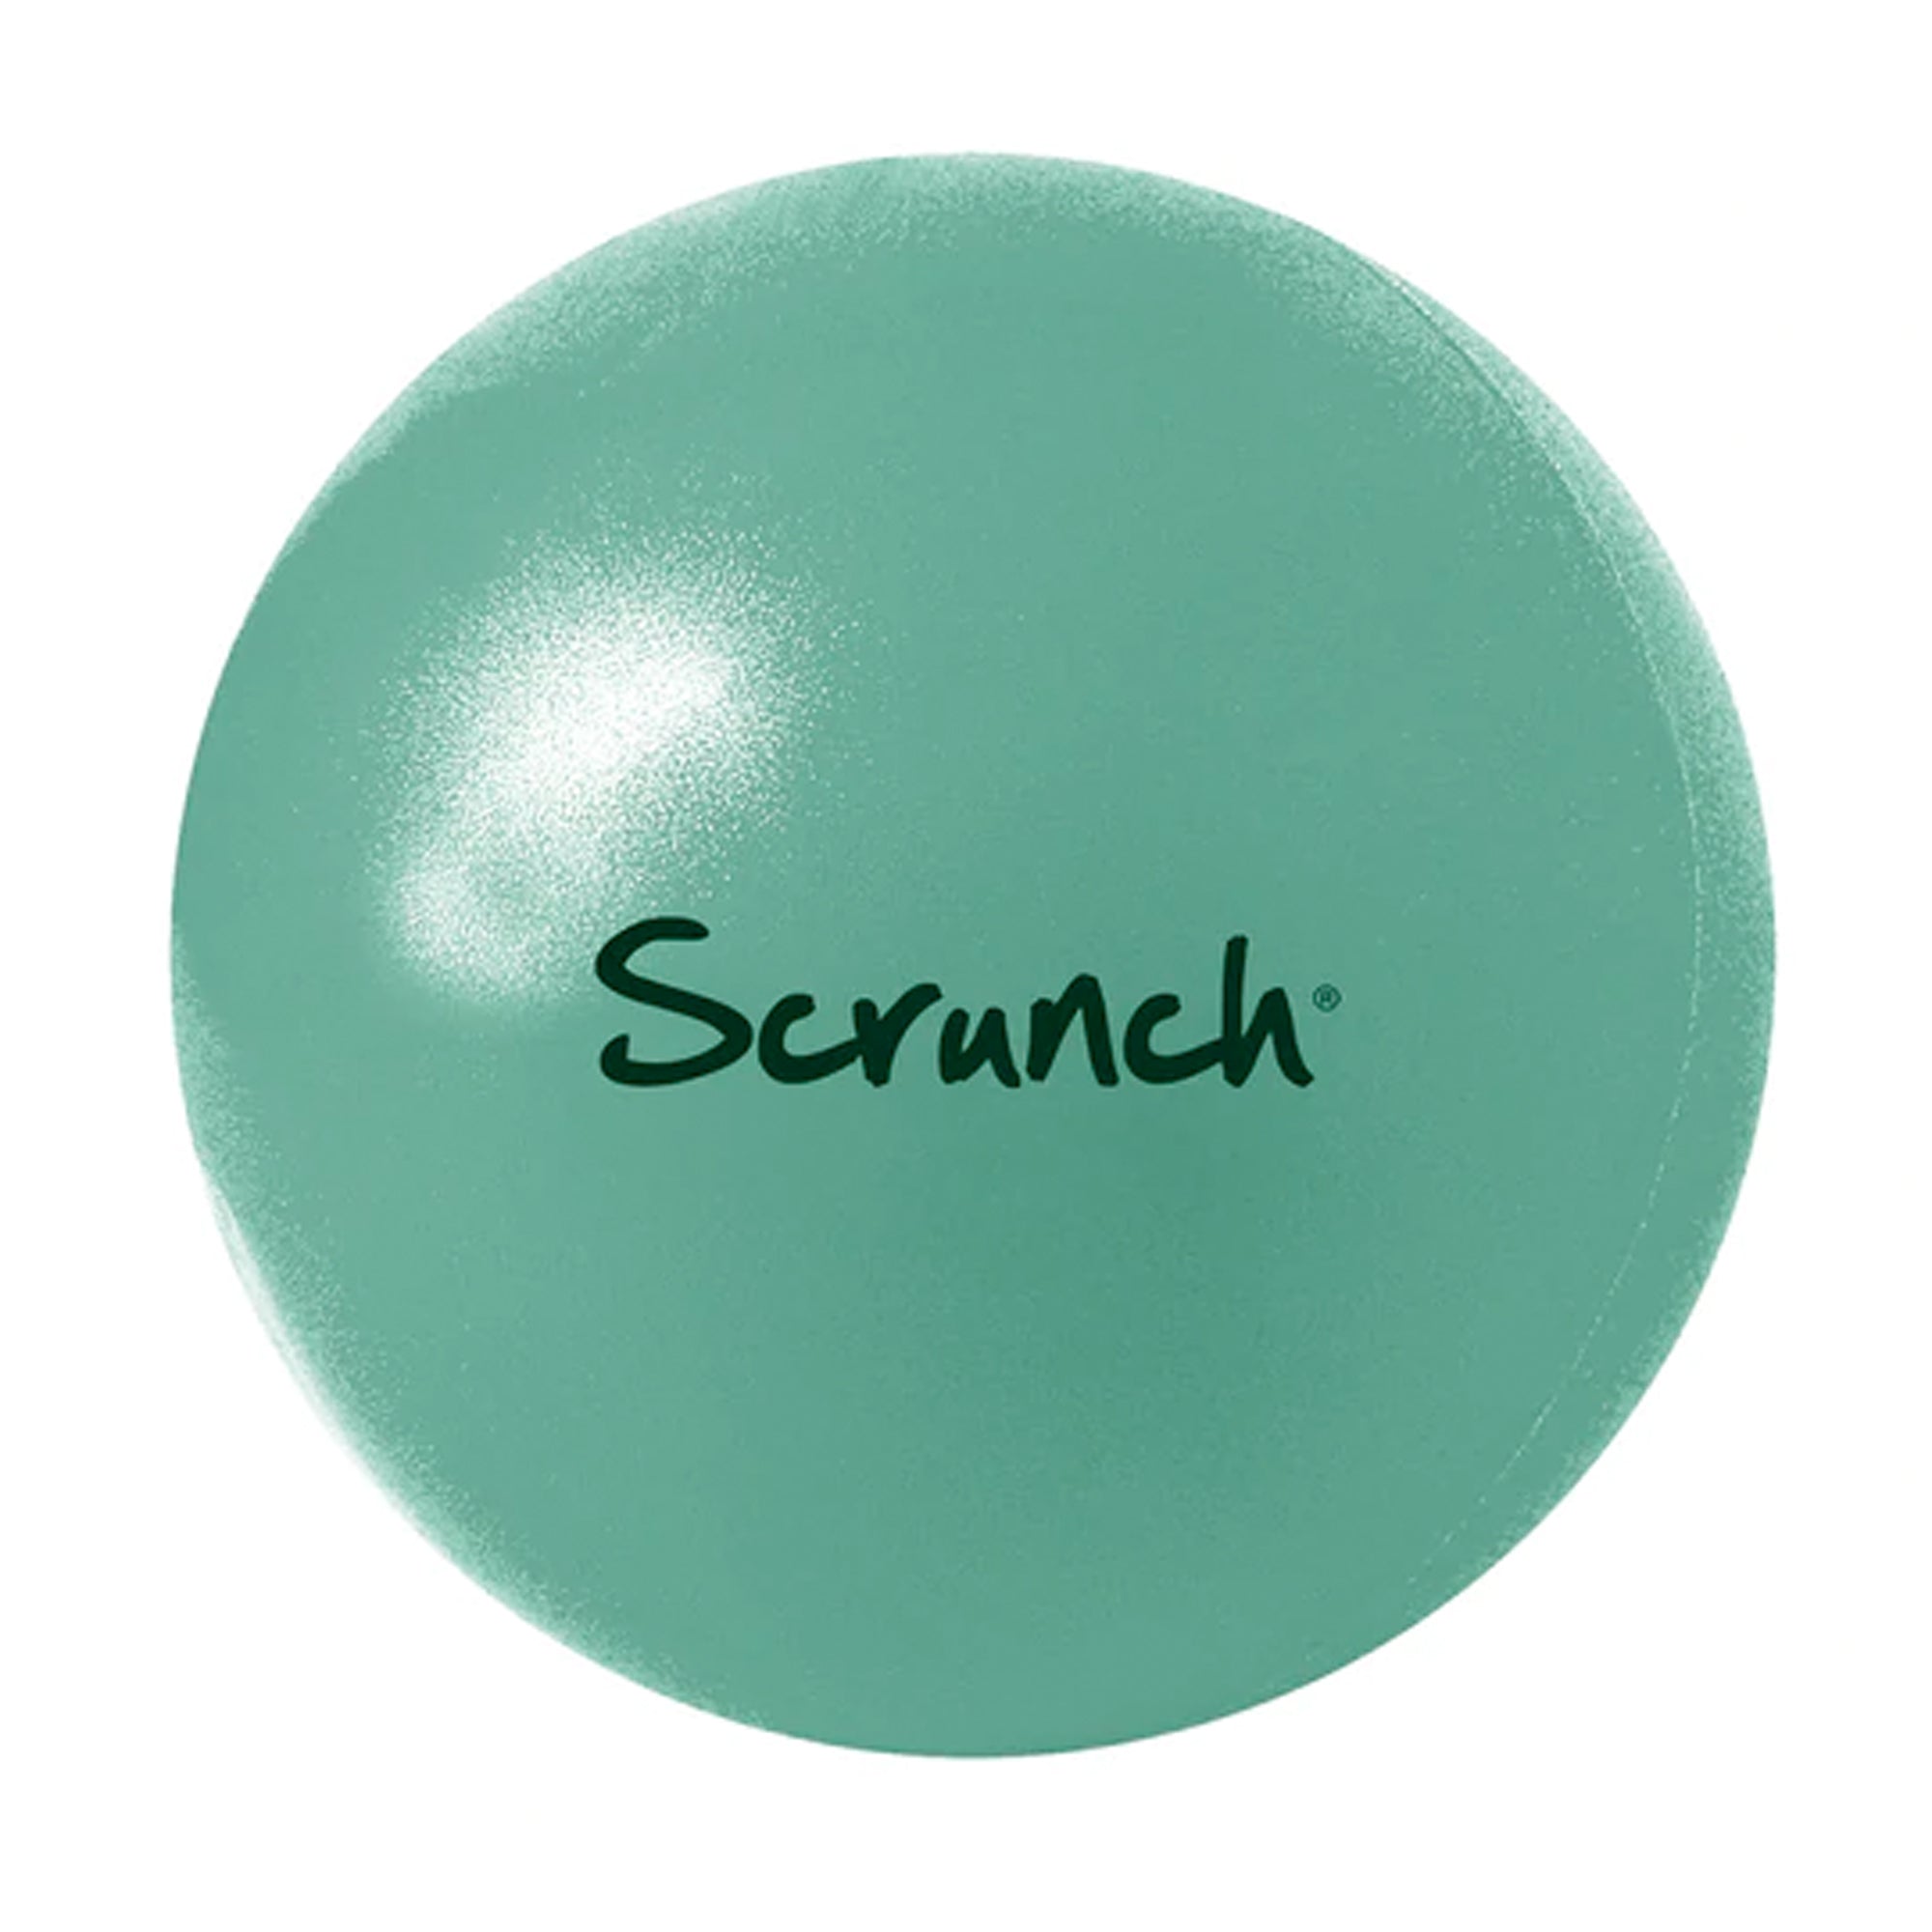 Scrunch - Sand Sifter Mint Green